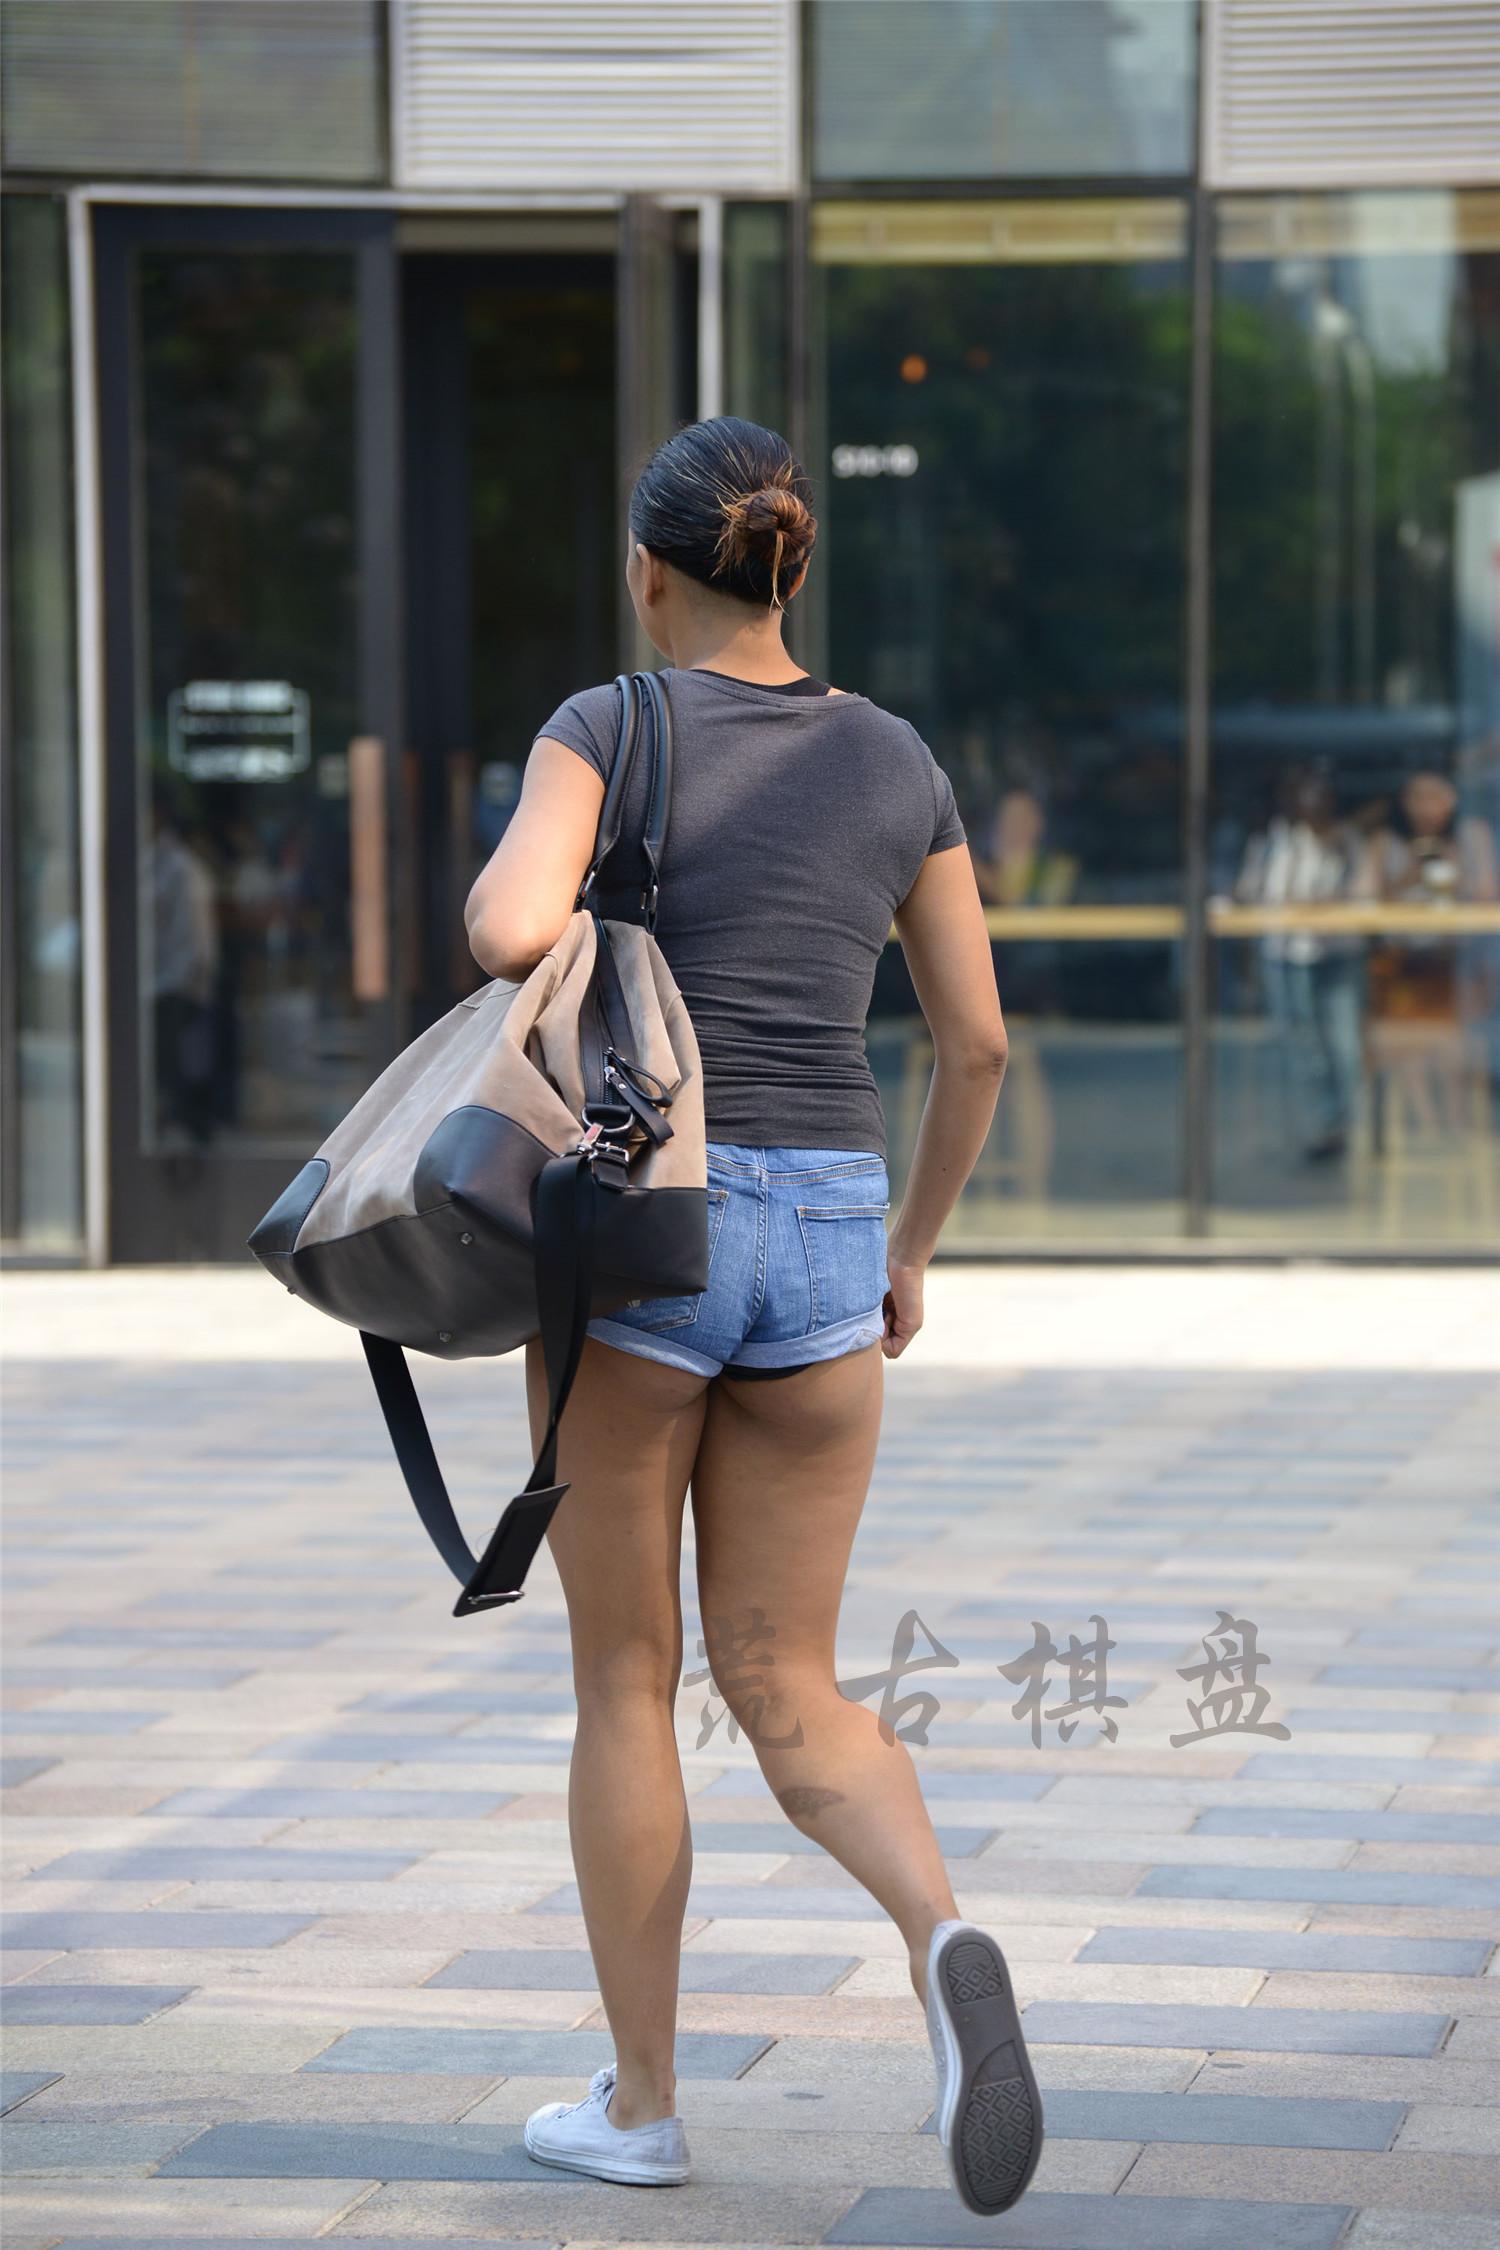 街拍:洋人小姐姐出行逛街,穿这么短的热裤秀自己,路人是不是该回避一